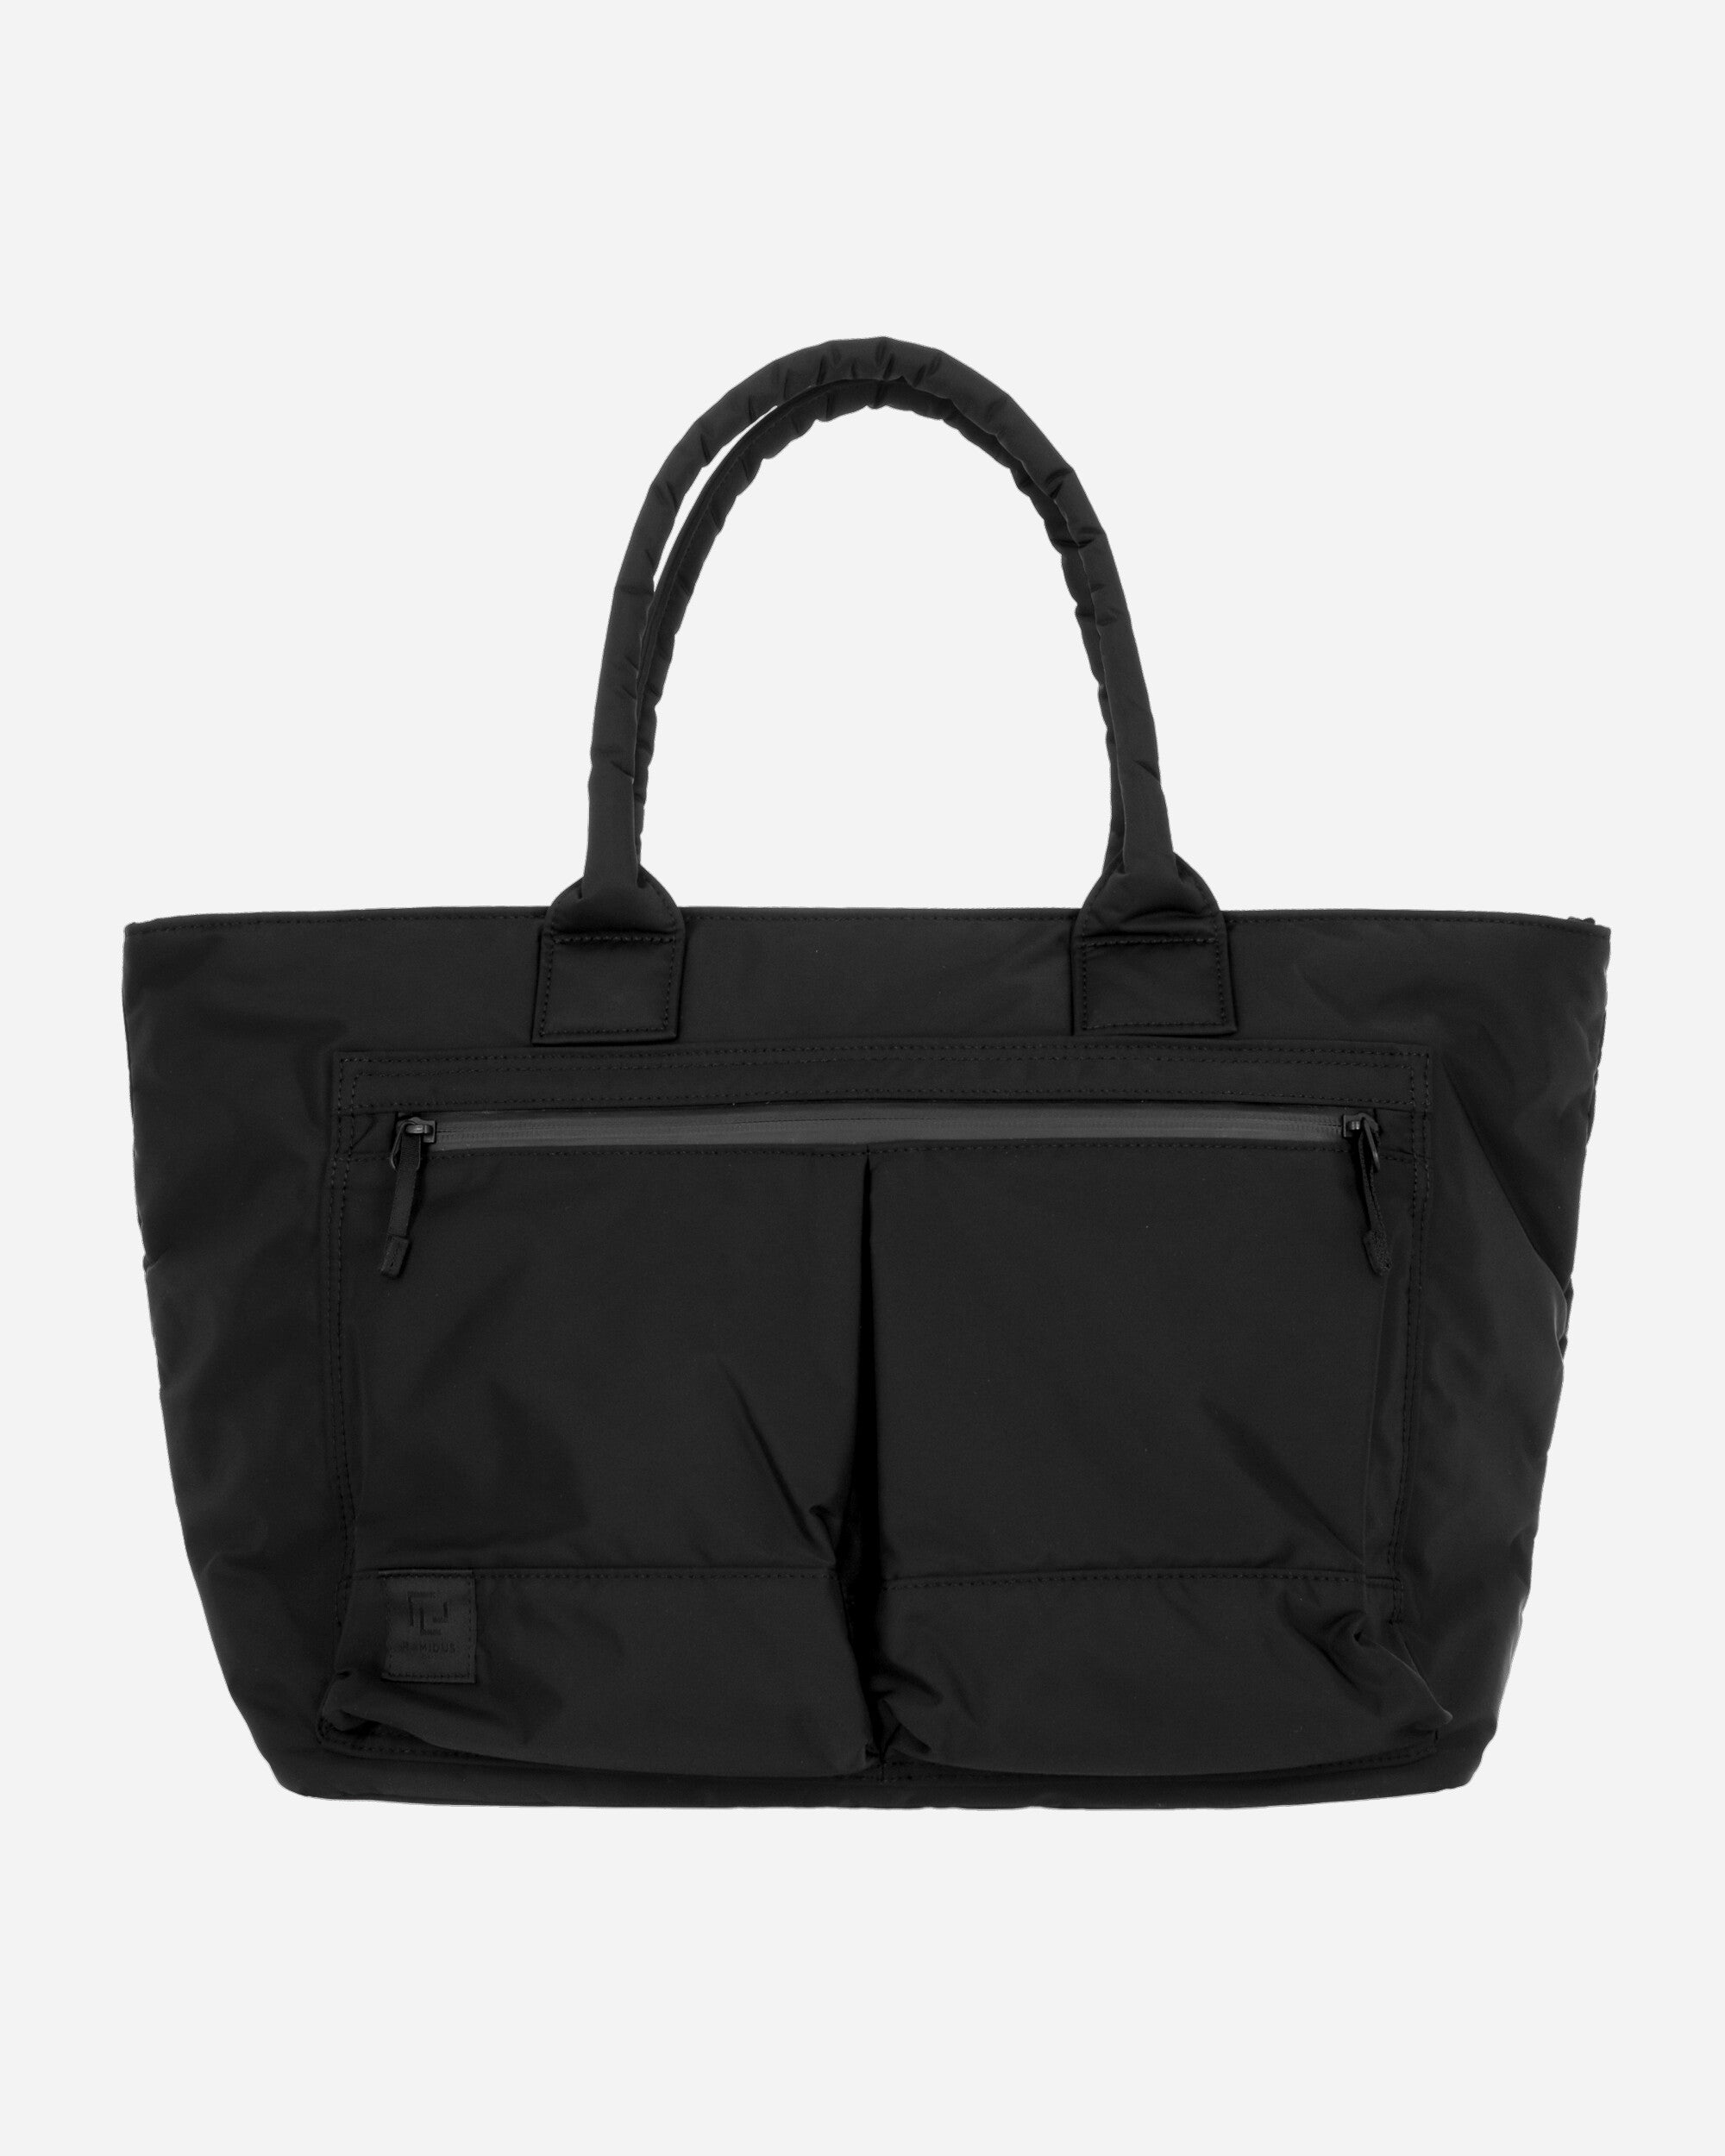 Ramidus Tote Bag (L) Black Bags and Backpacks Tote Bags B011090 001